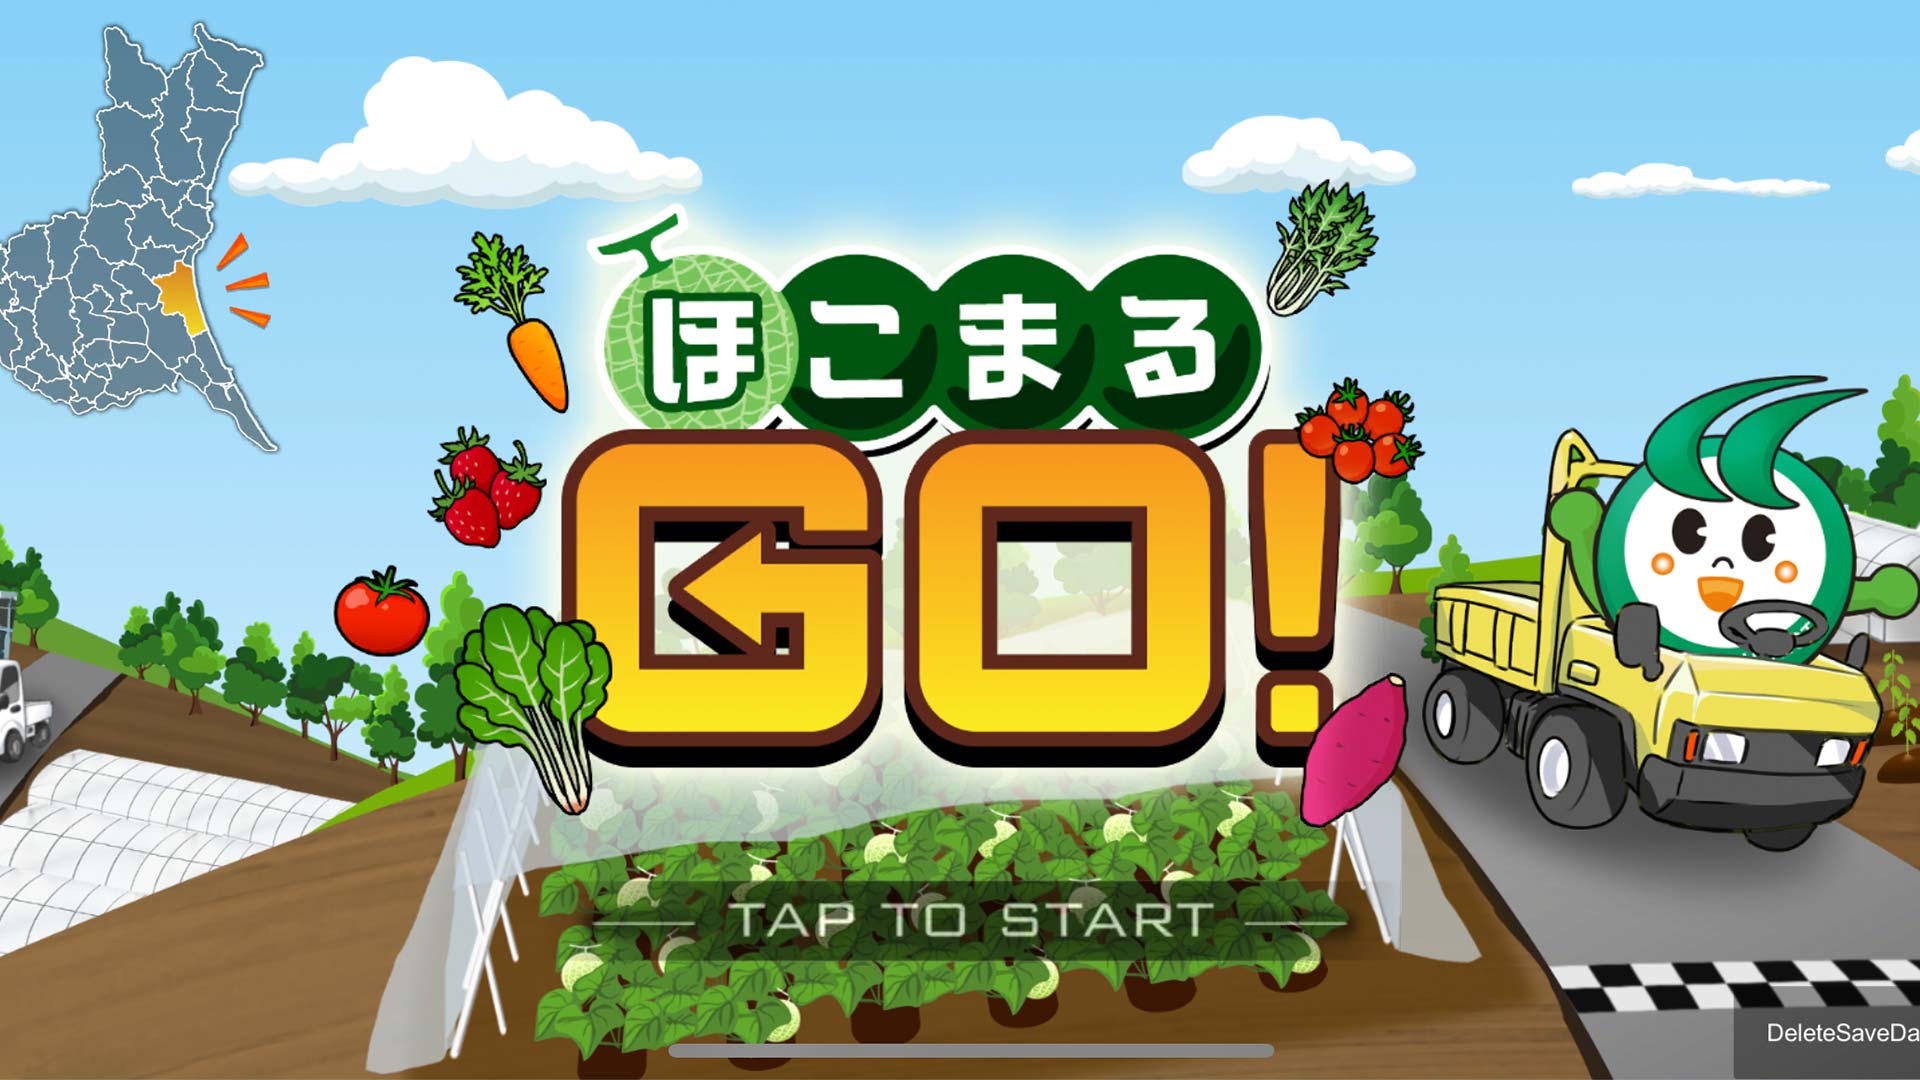 PLATEAUを活用したシティプロモーションレースゲームアプリ「ほこまるGo！」をリリースしました